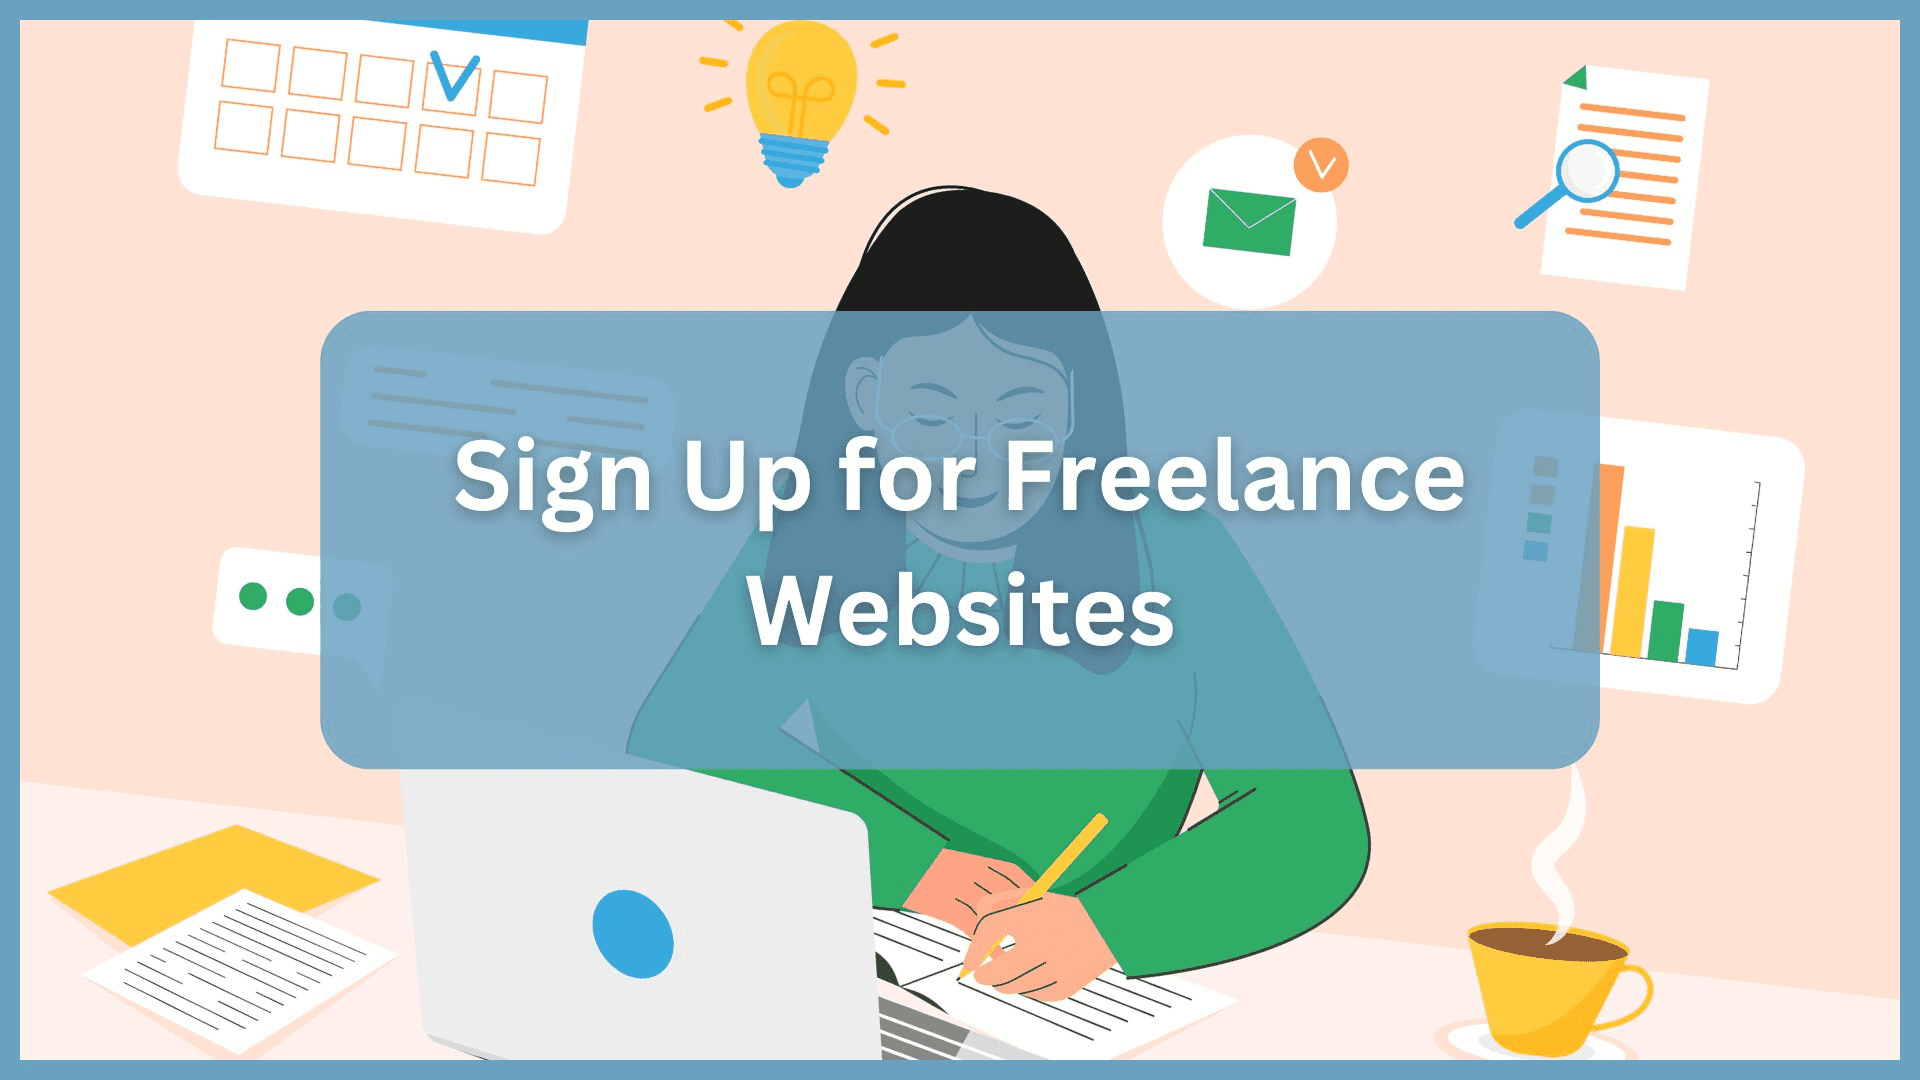 Sign Up for Freelance Websites